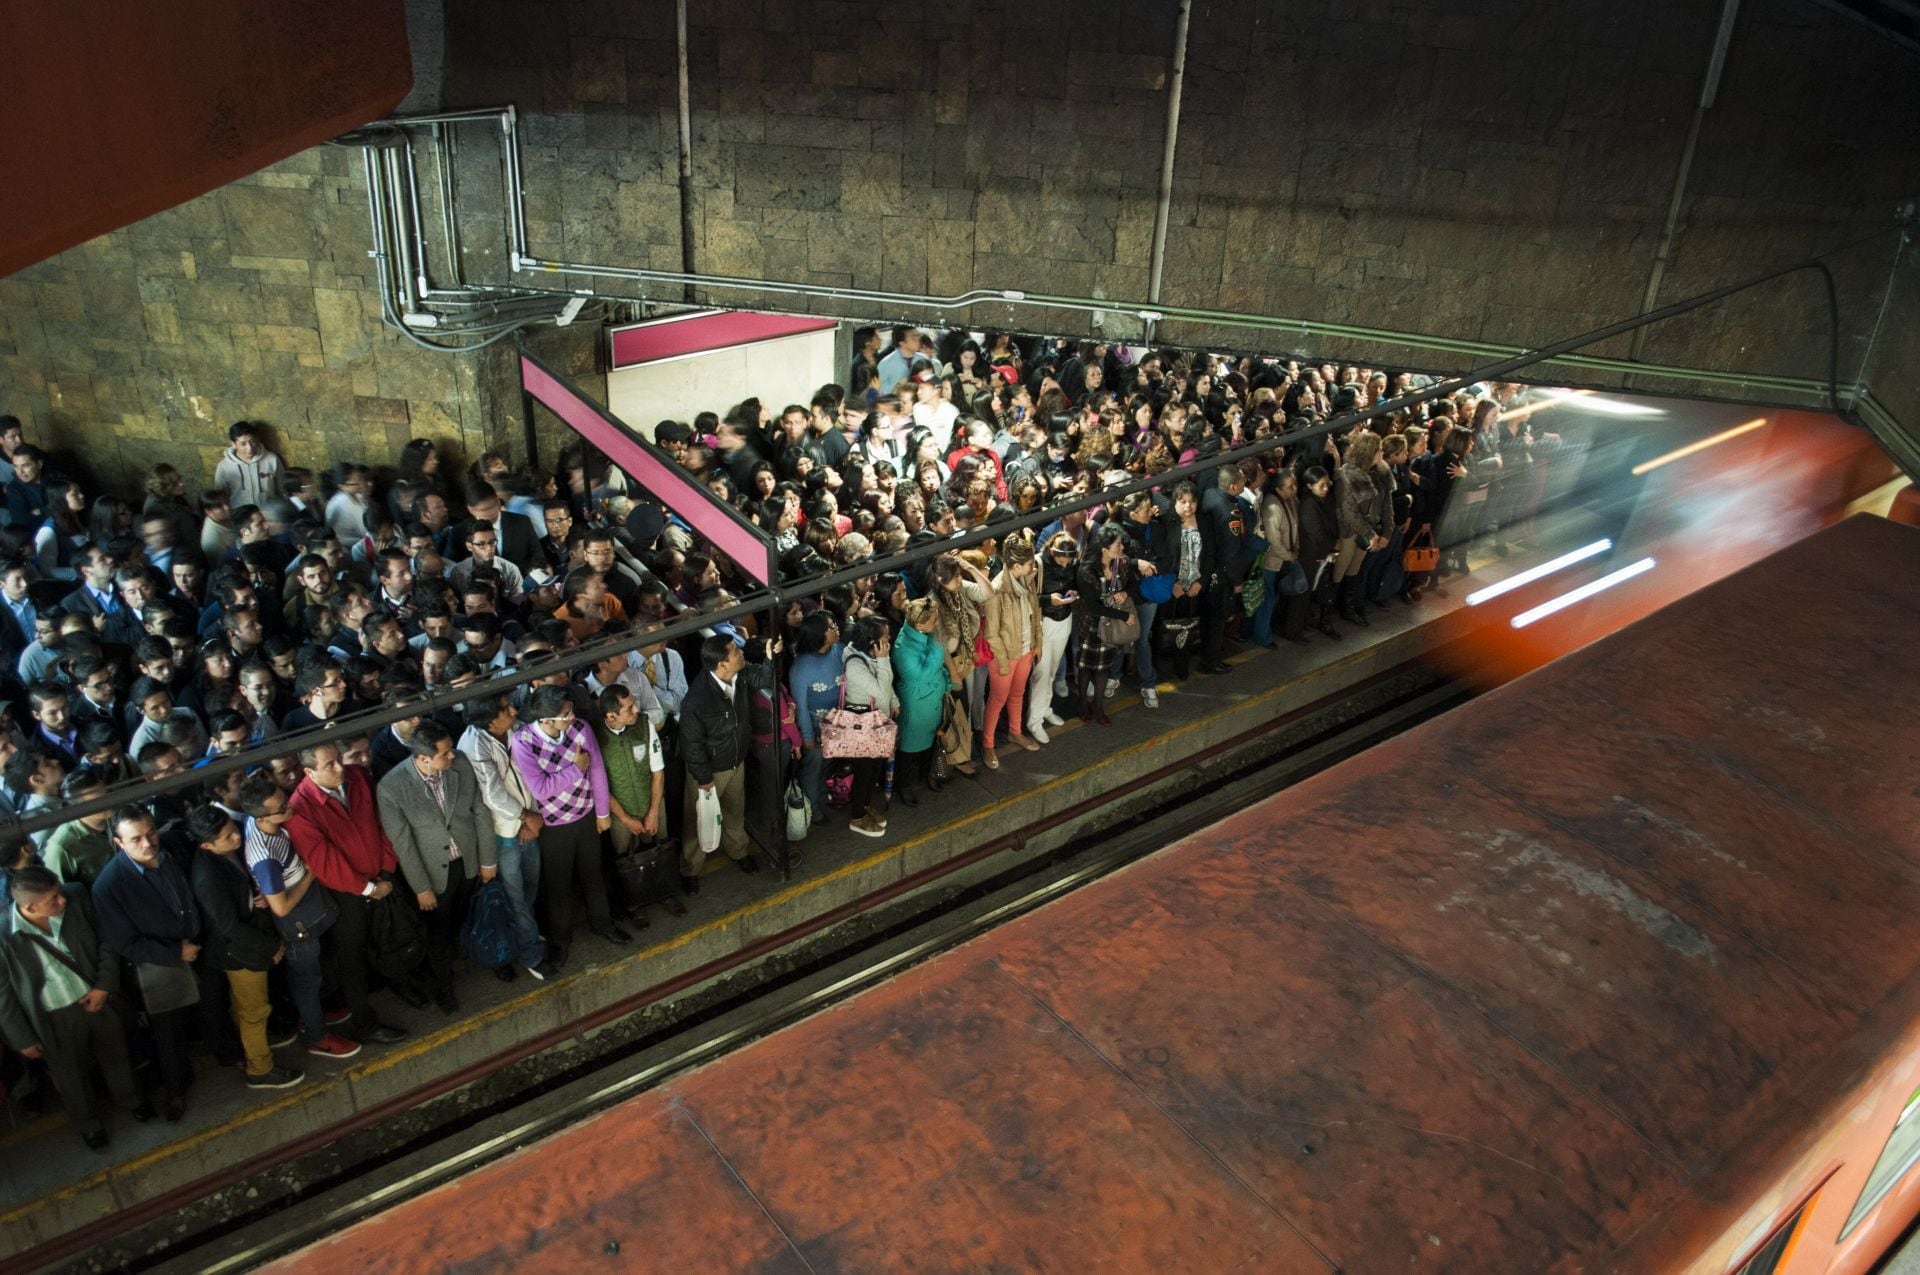 ‘¡Manden más trenes!’: Usuarios del Metro de CDMX reportan retrasos de 10 minutos en 3 líneas